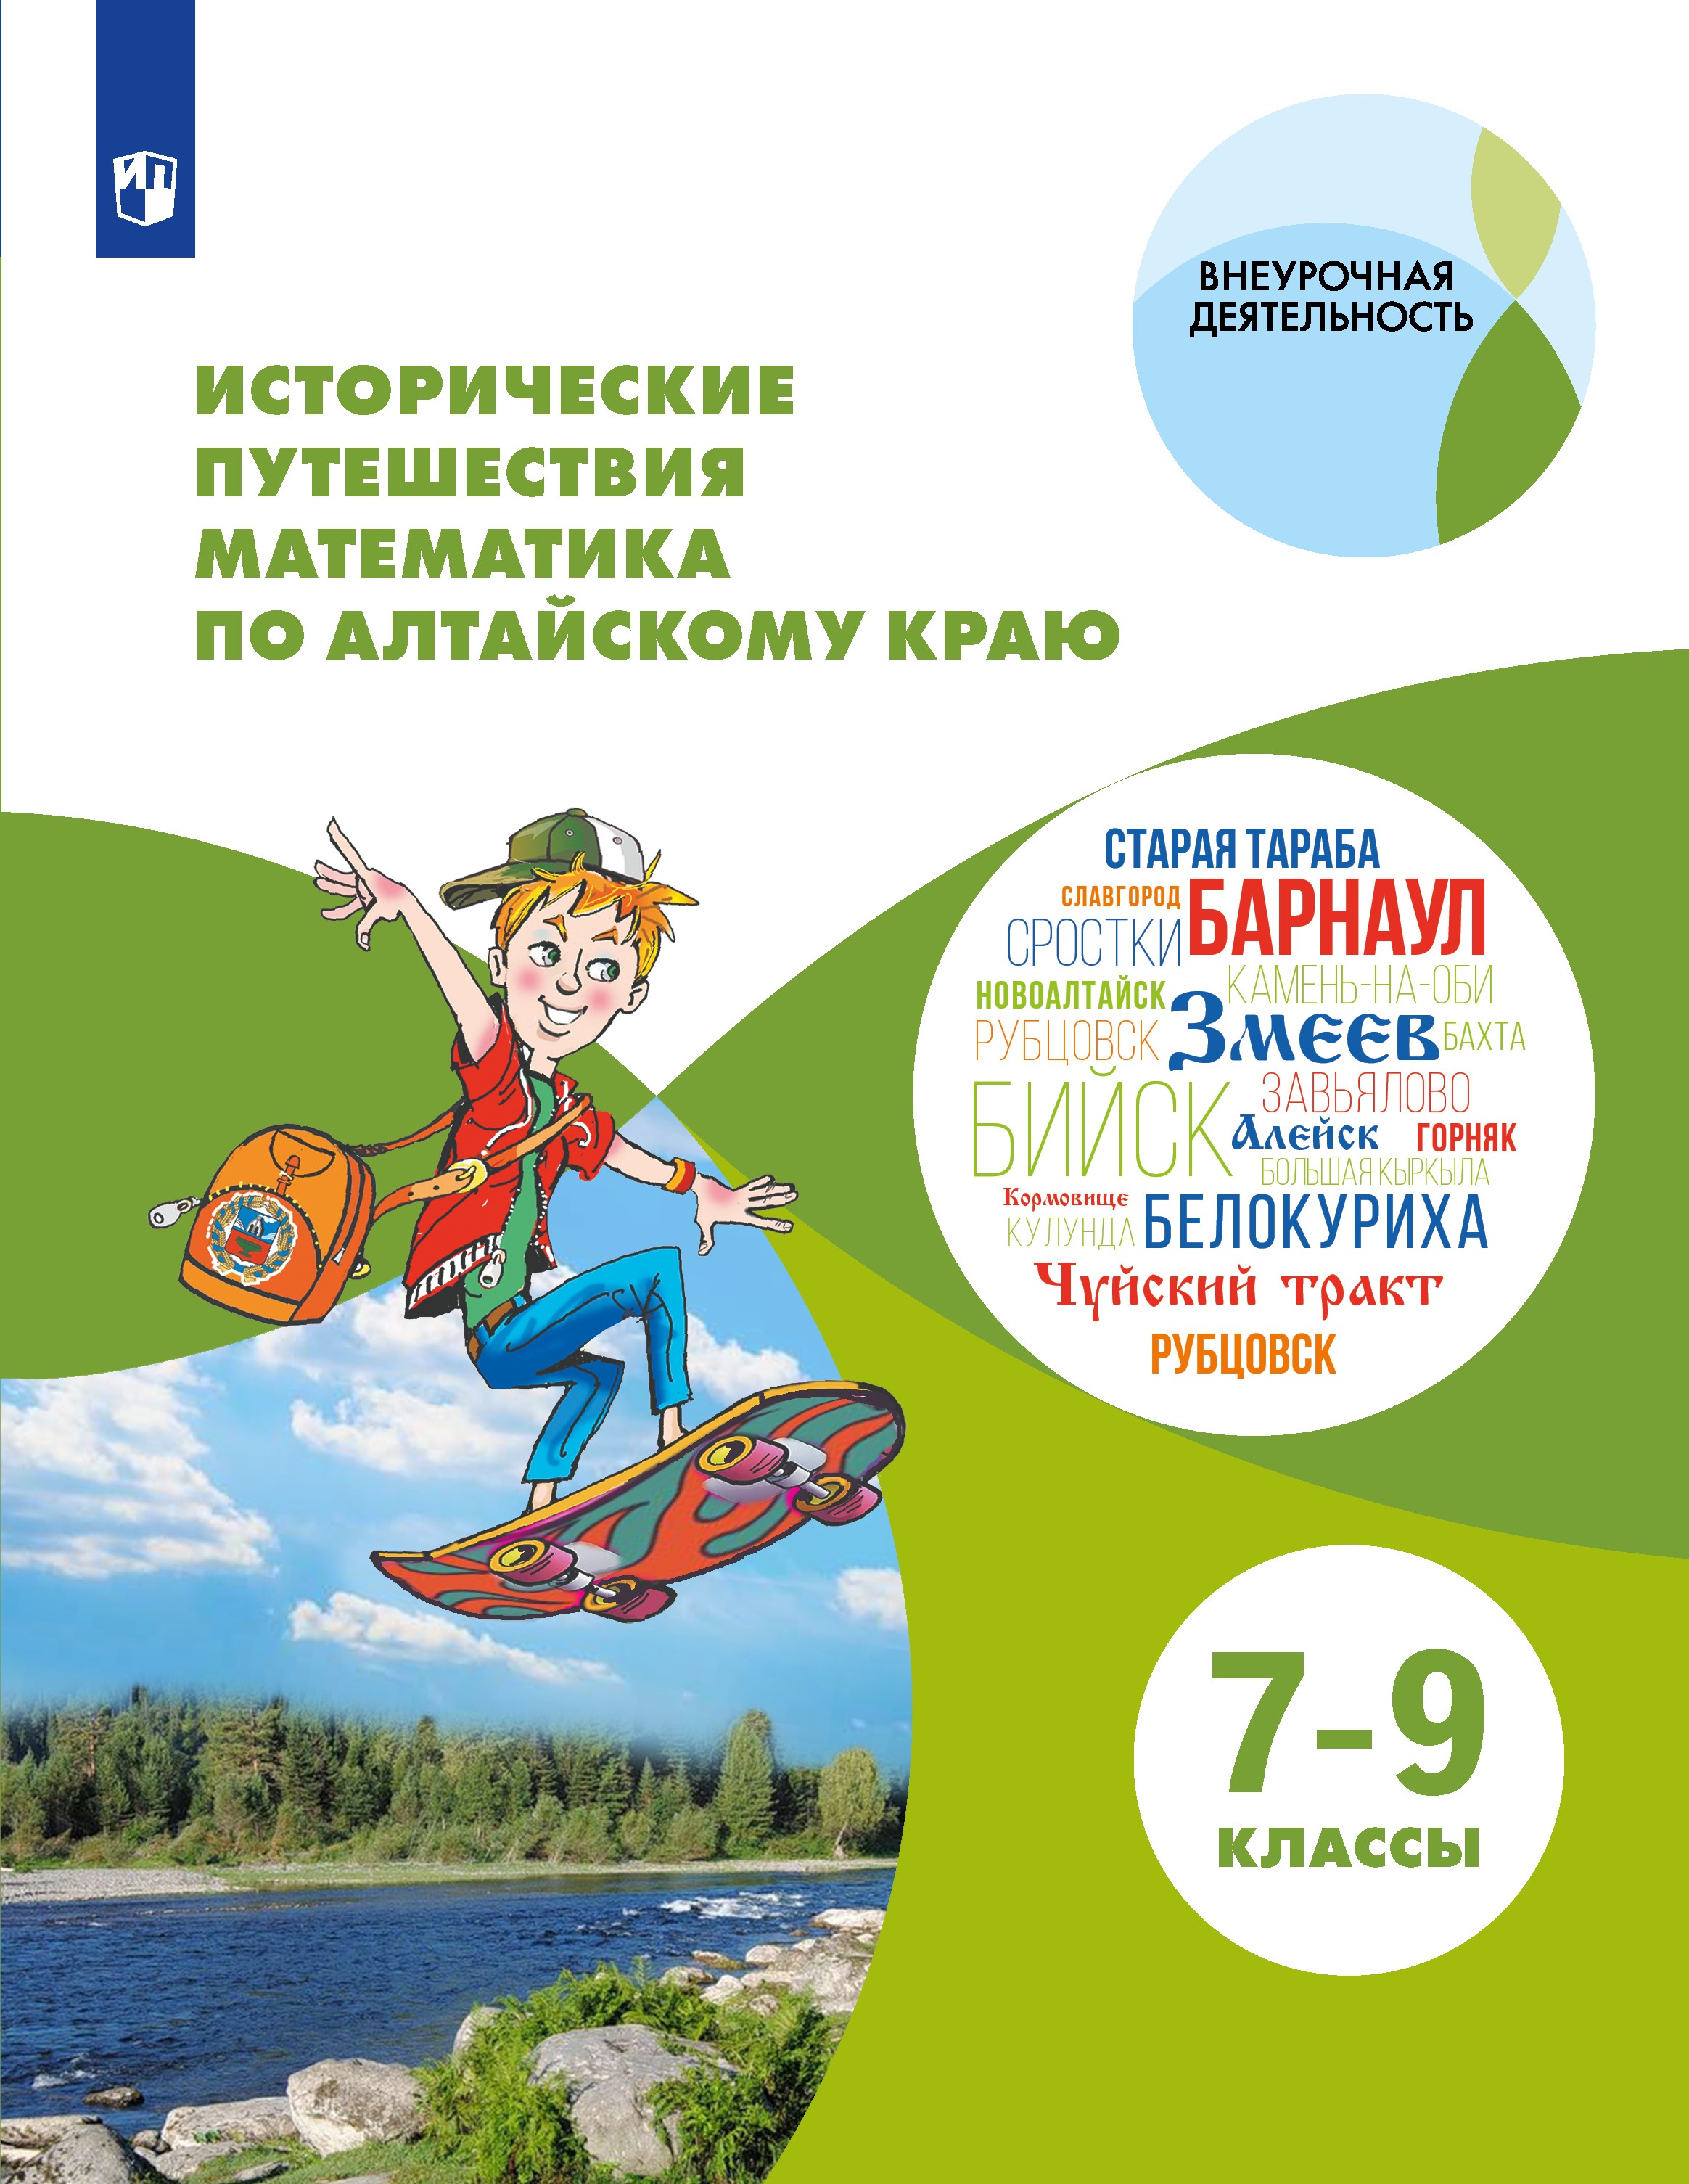 Исторические путешествия математика по Алтайскому краю (учебное пособие для 7-9 классов)